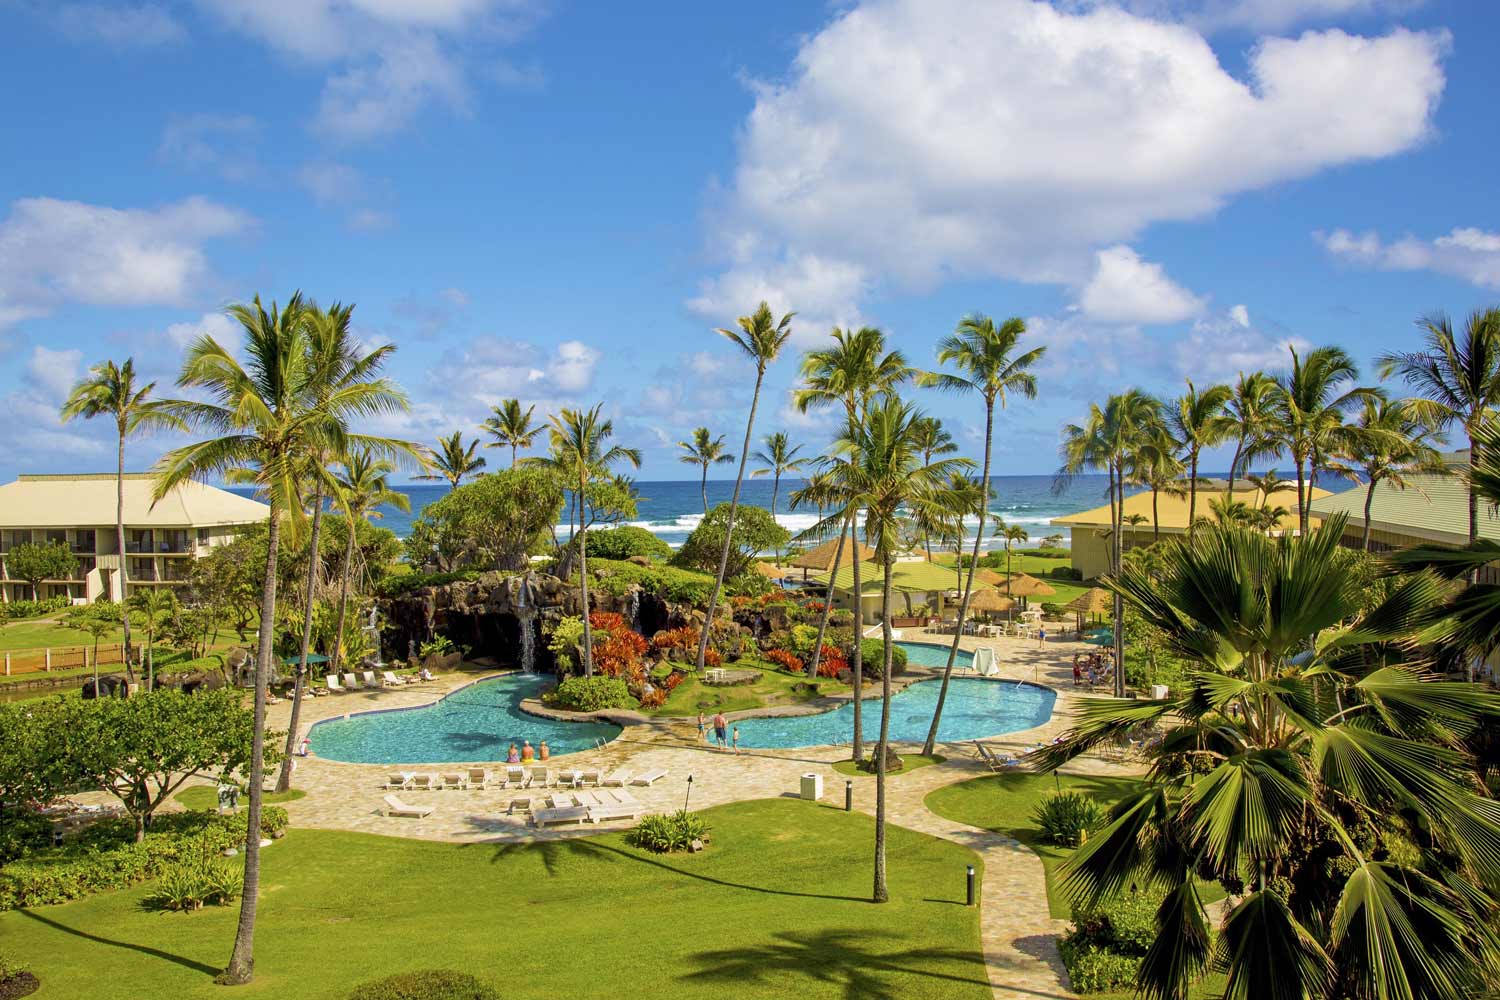 Cheap and Affordable Hotels in Kauai: Kauai Beach Resort